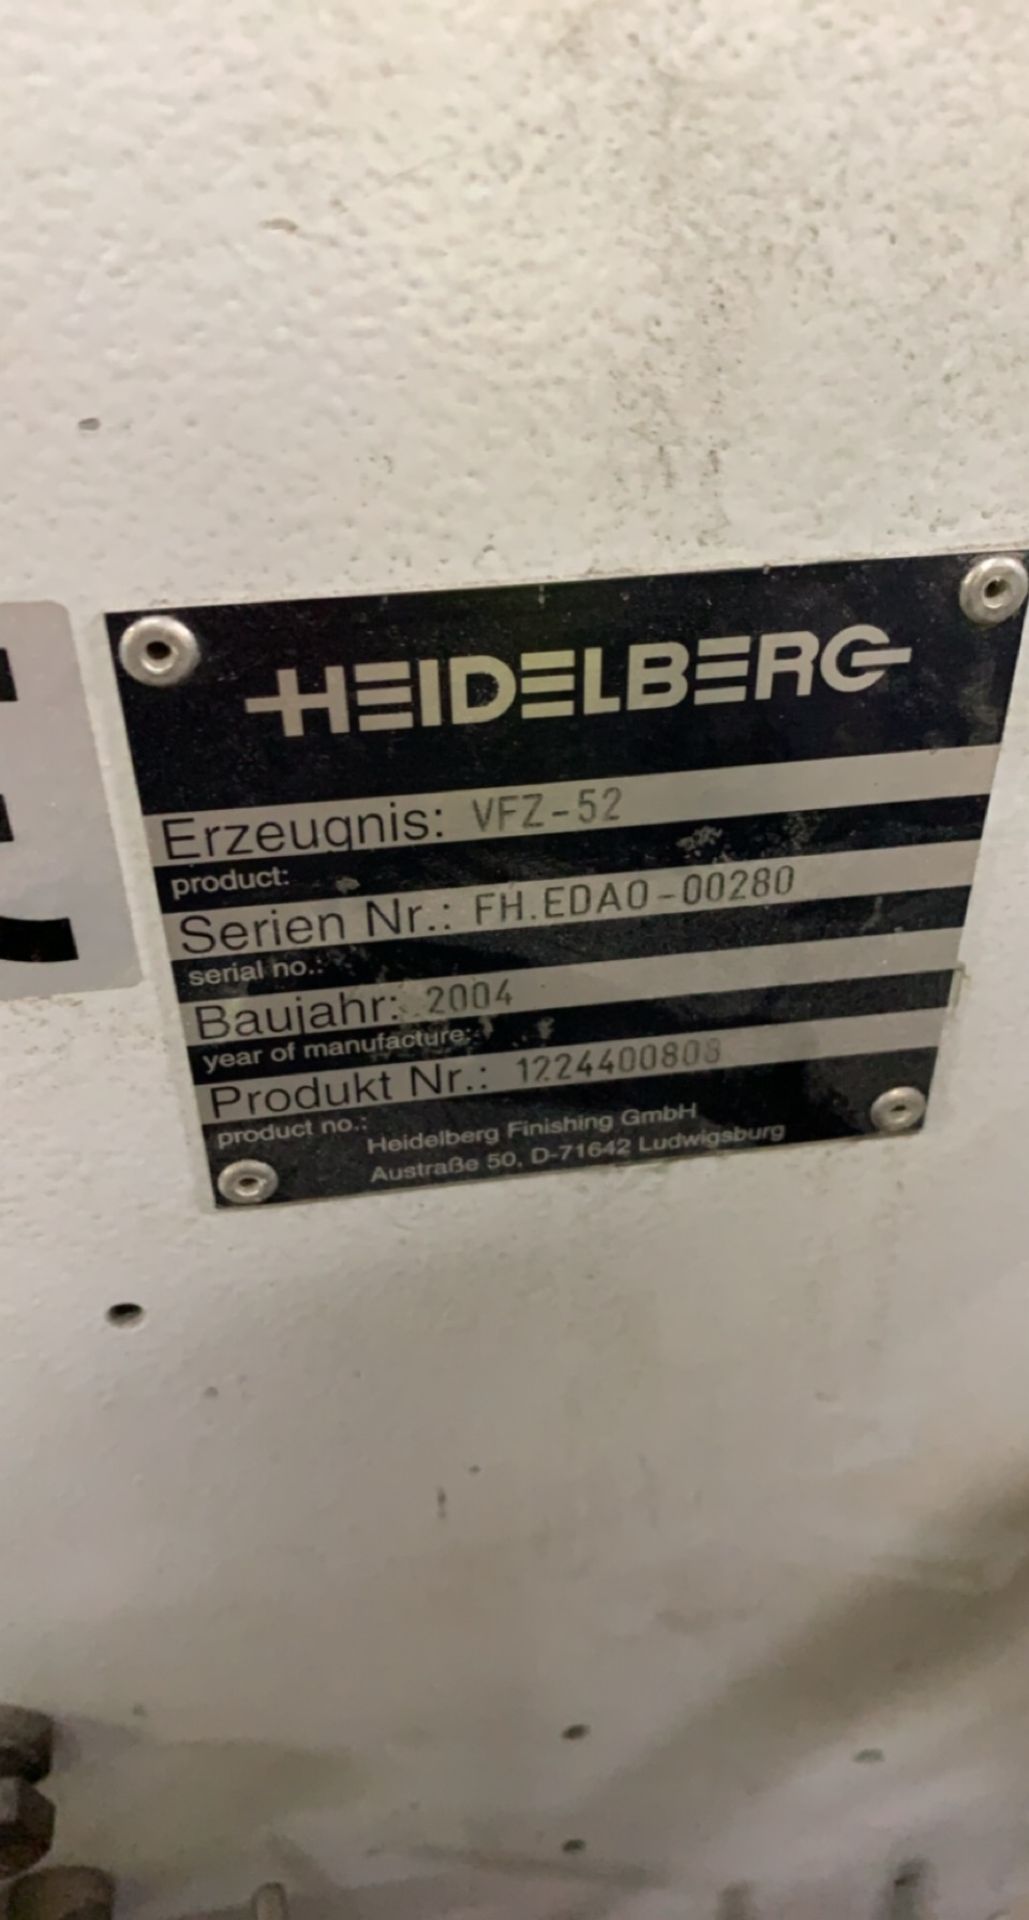 Heidelberg VFZ-52 four directional folding unit, sno FH.EDAO-00280, Product No 1224400808 - Bild 3 aus 5